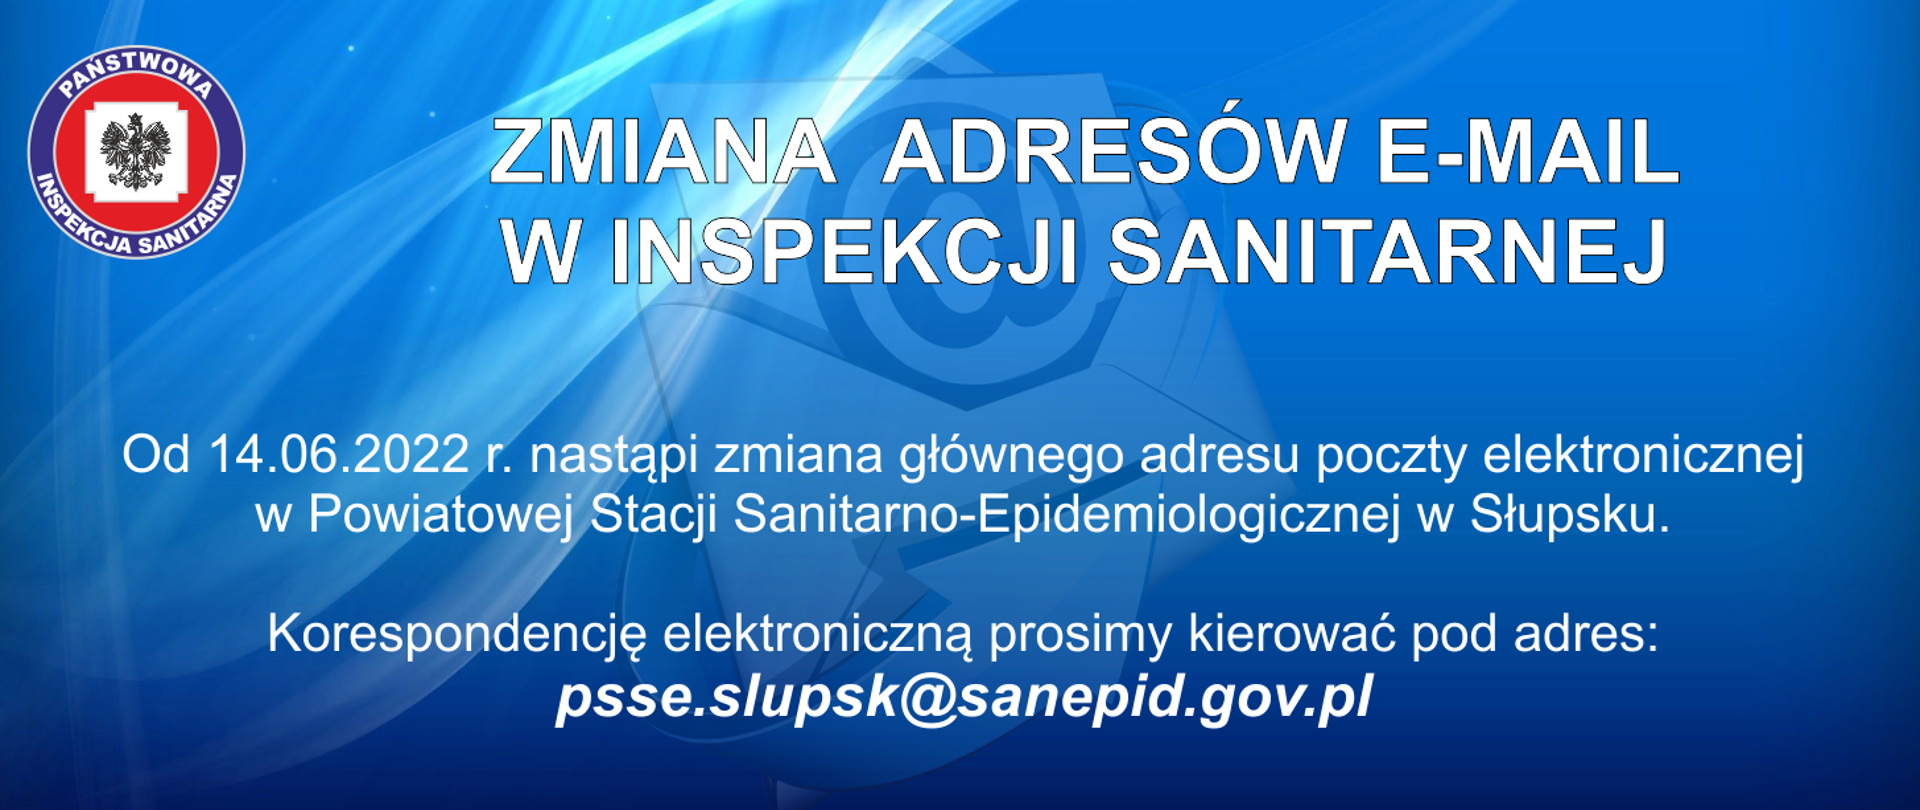 Zmiana adresu e-mail Powiatowej Stacji Sanitarno-Epidemiologicznej w Słupsku na psse.slupsk@sanepid.gov.pl